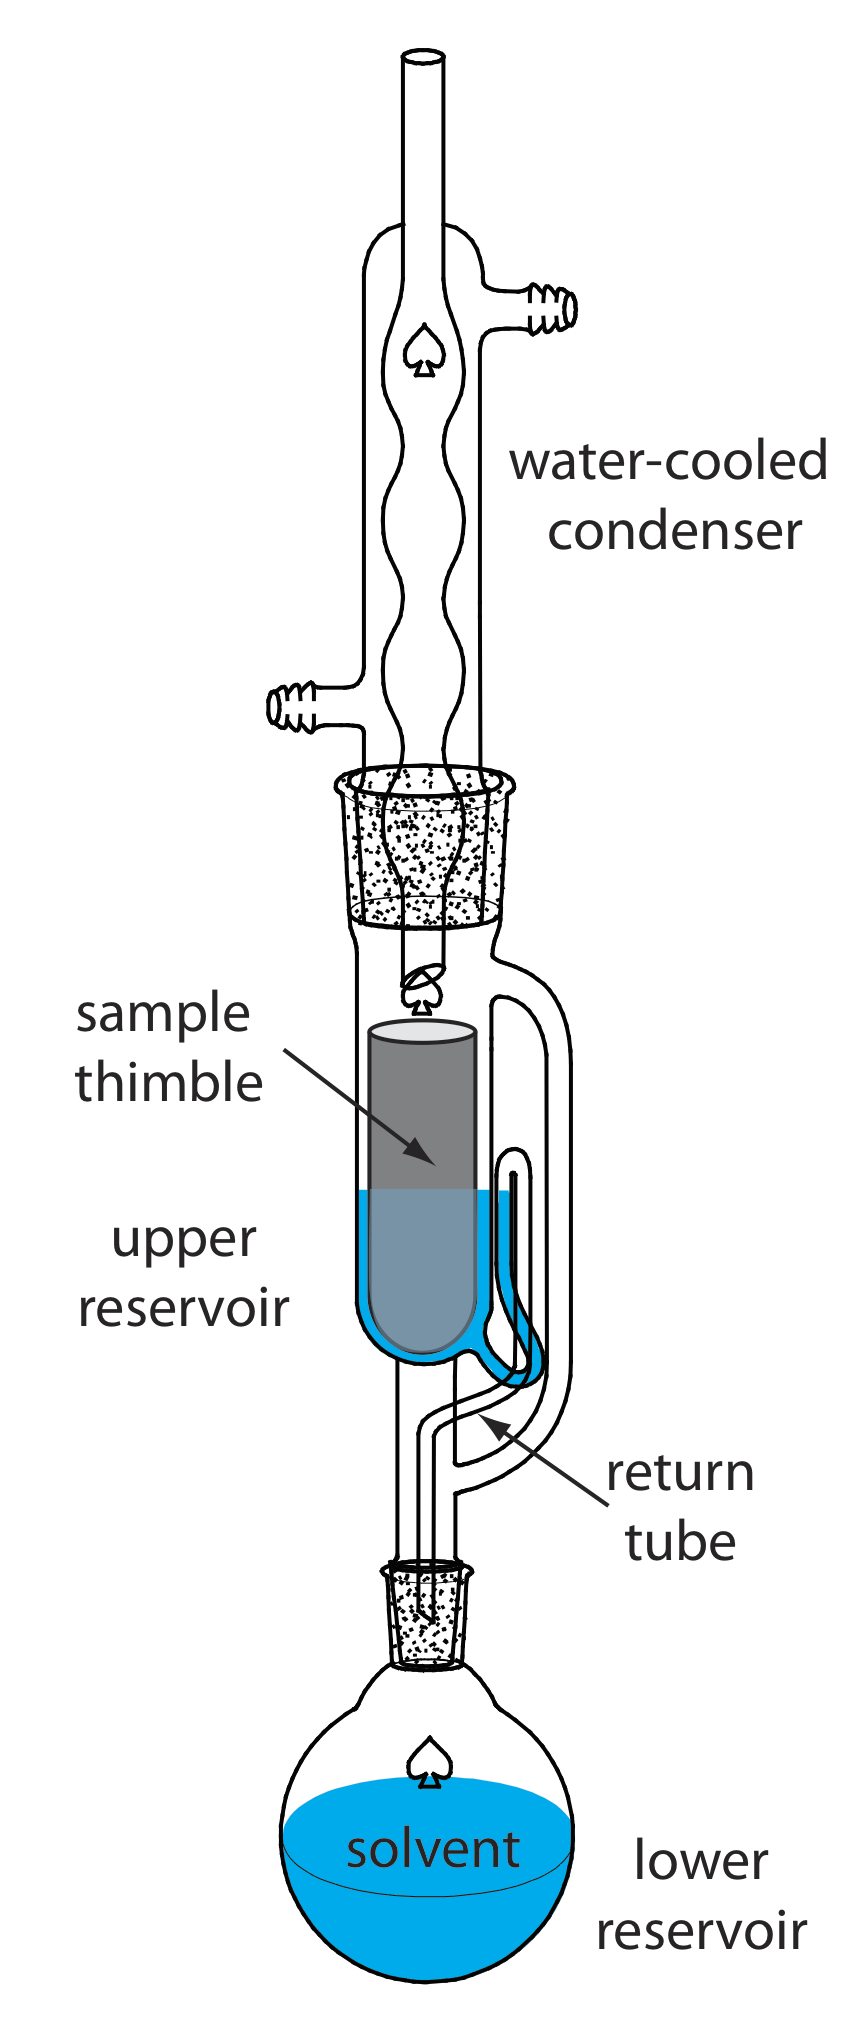 El extractor Soxhlet consiste en un reservorio inferior con disolvente, un tubo de retorno por encima de ese, un reservorio superior y un dedal de muestra. En la parte superior, hay un condensador refrigerado por agua.